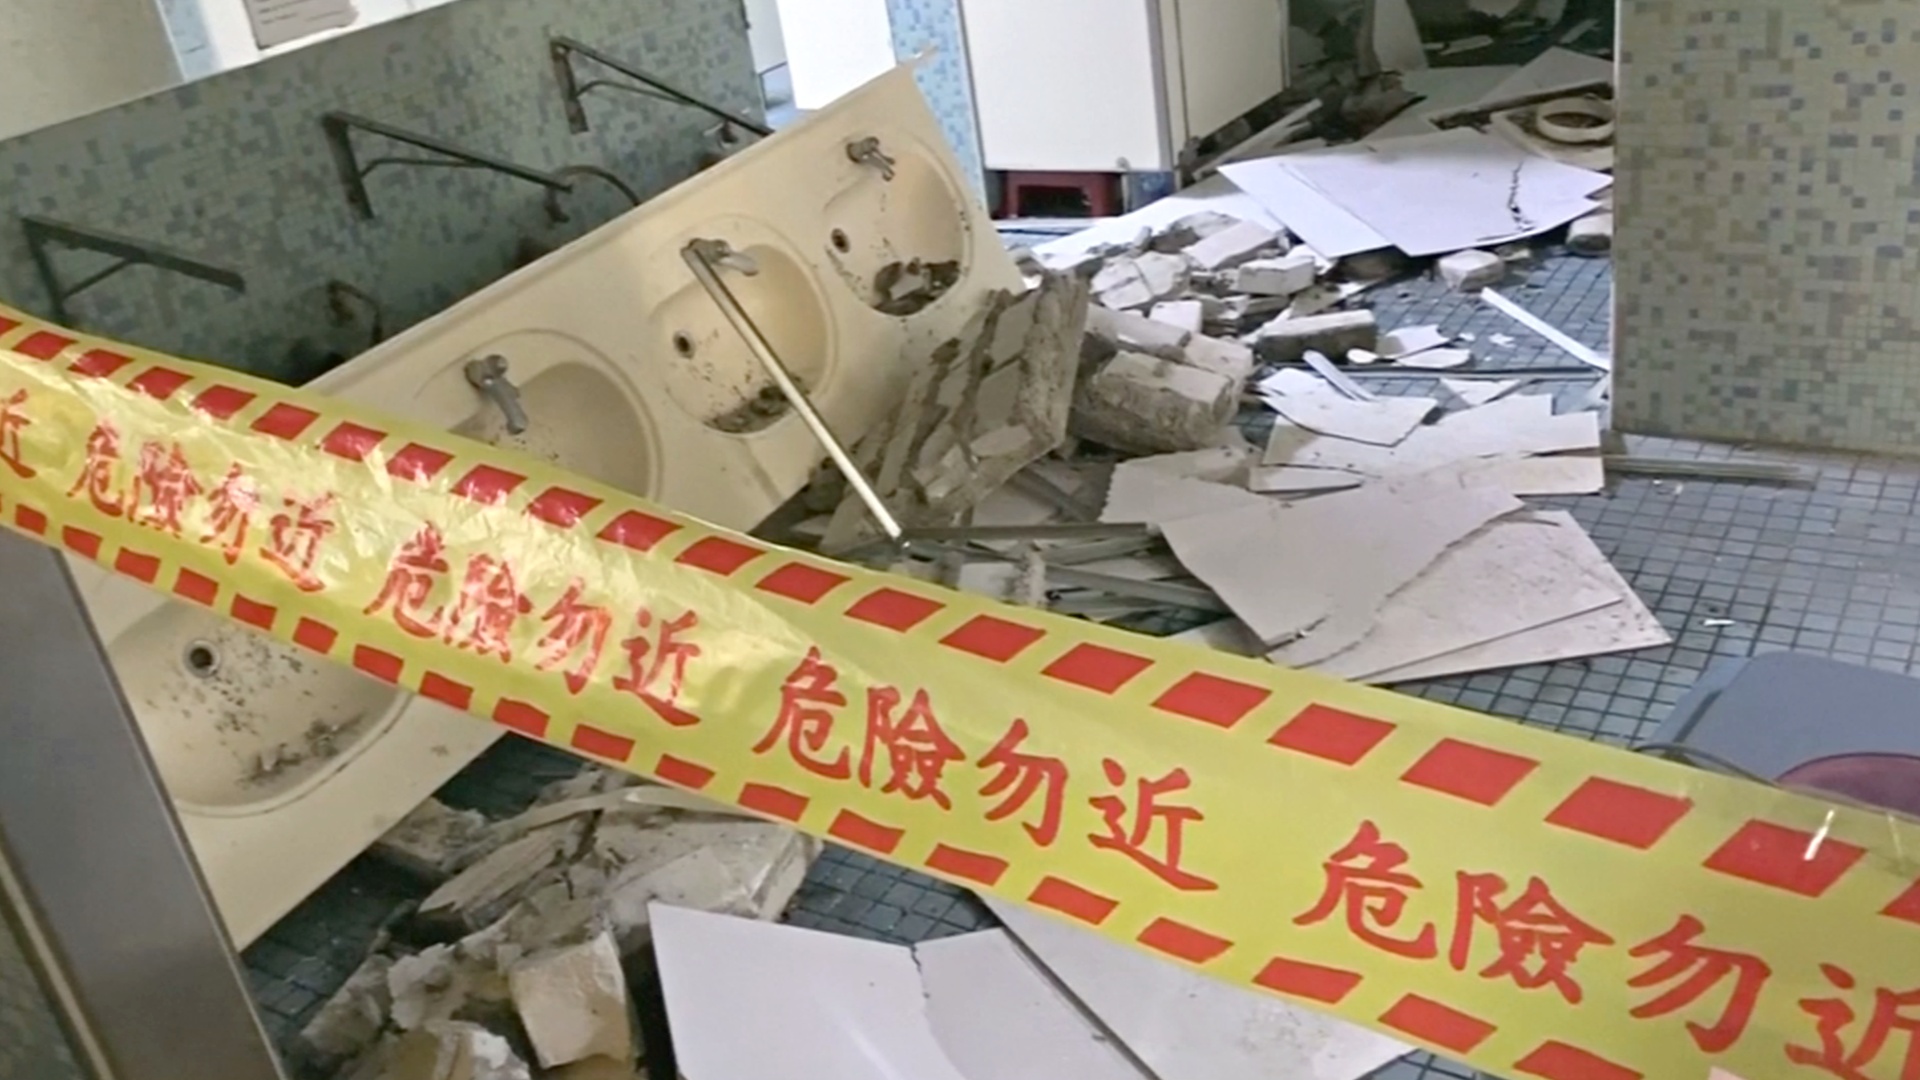 На Тайване произошло землетрясение силой 6,1 балла